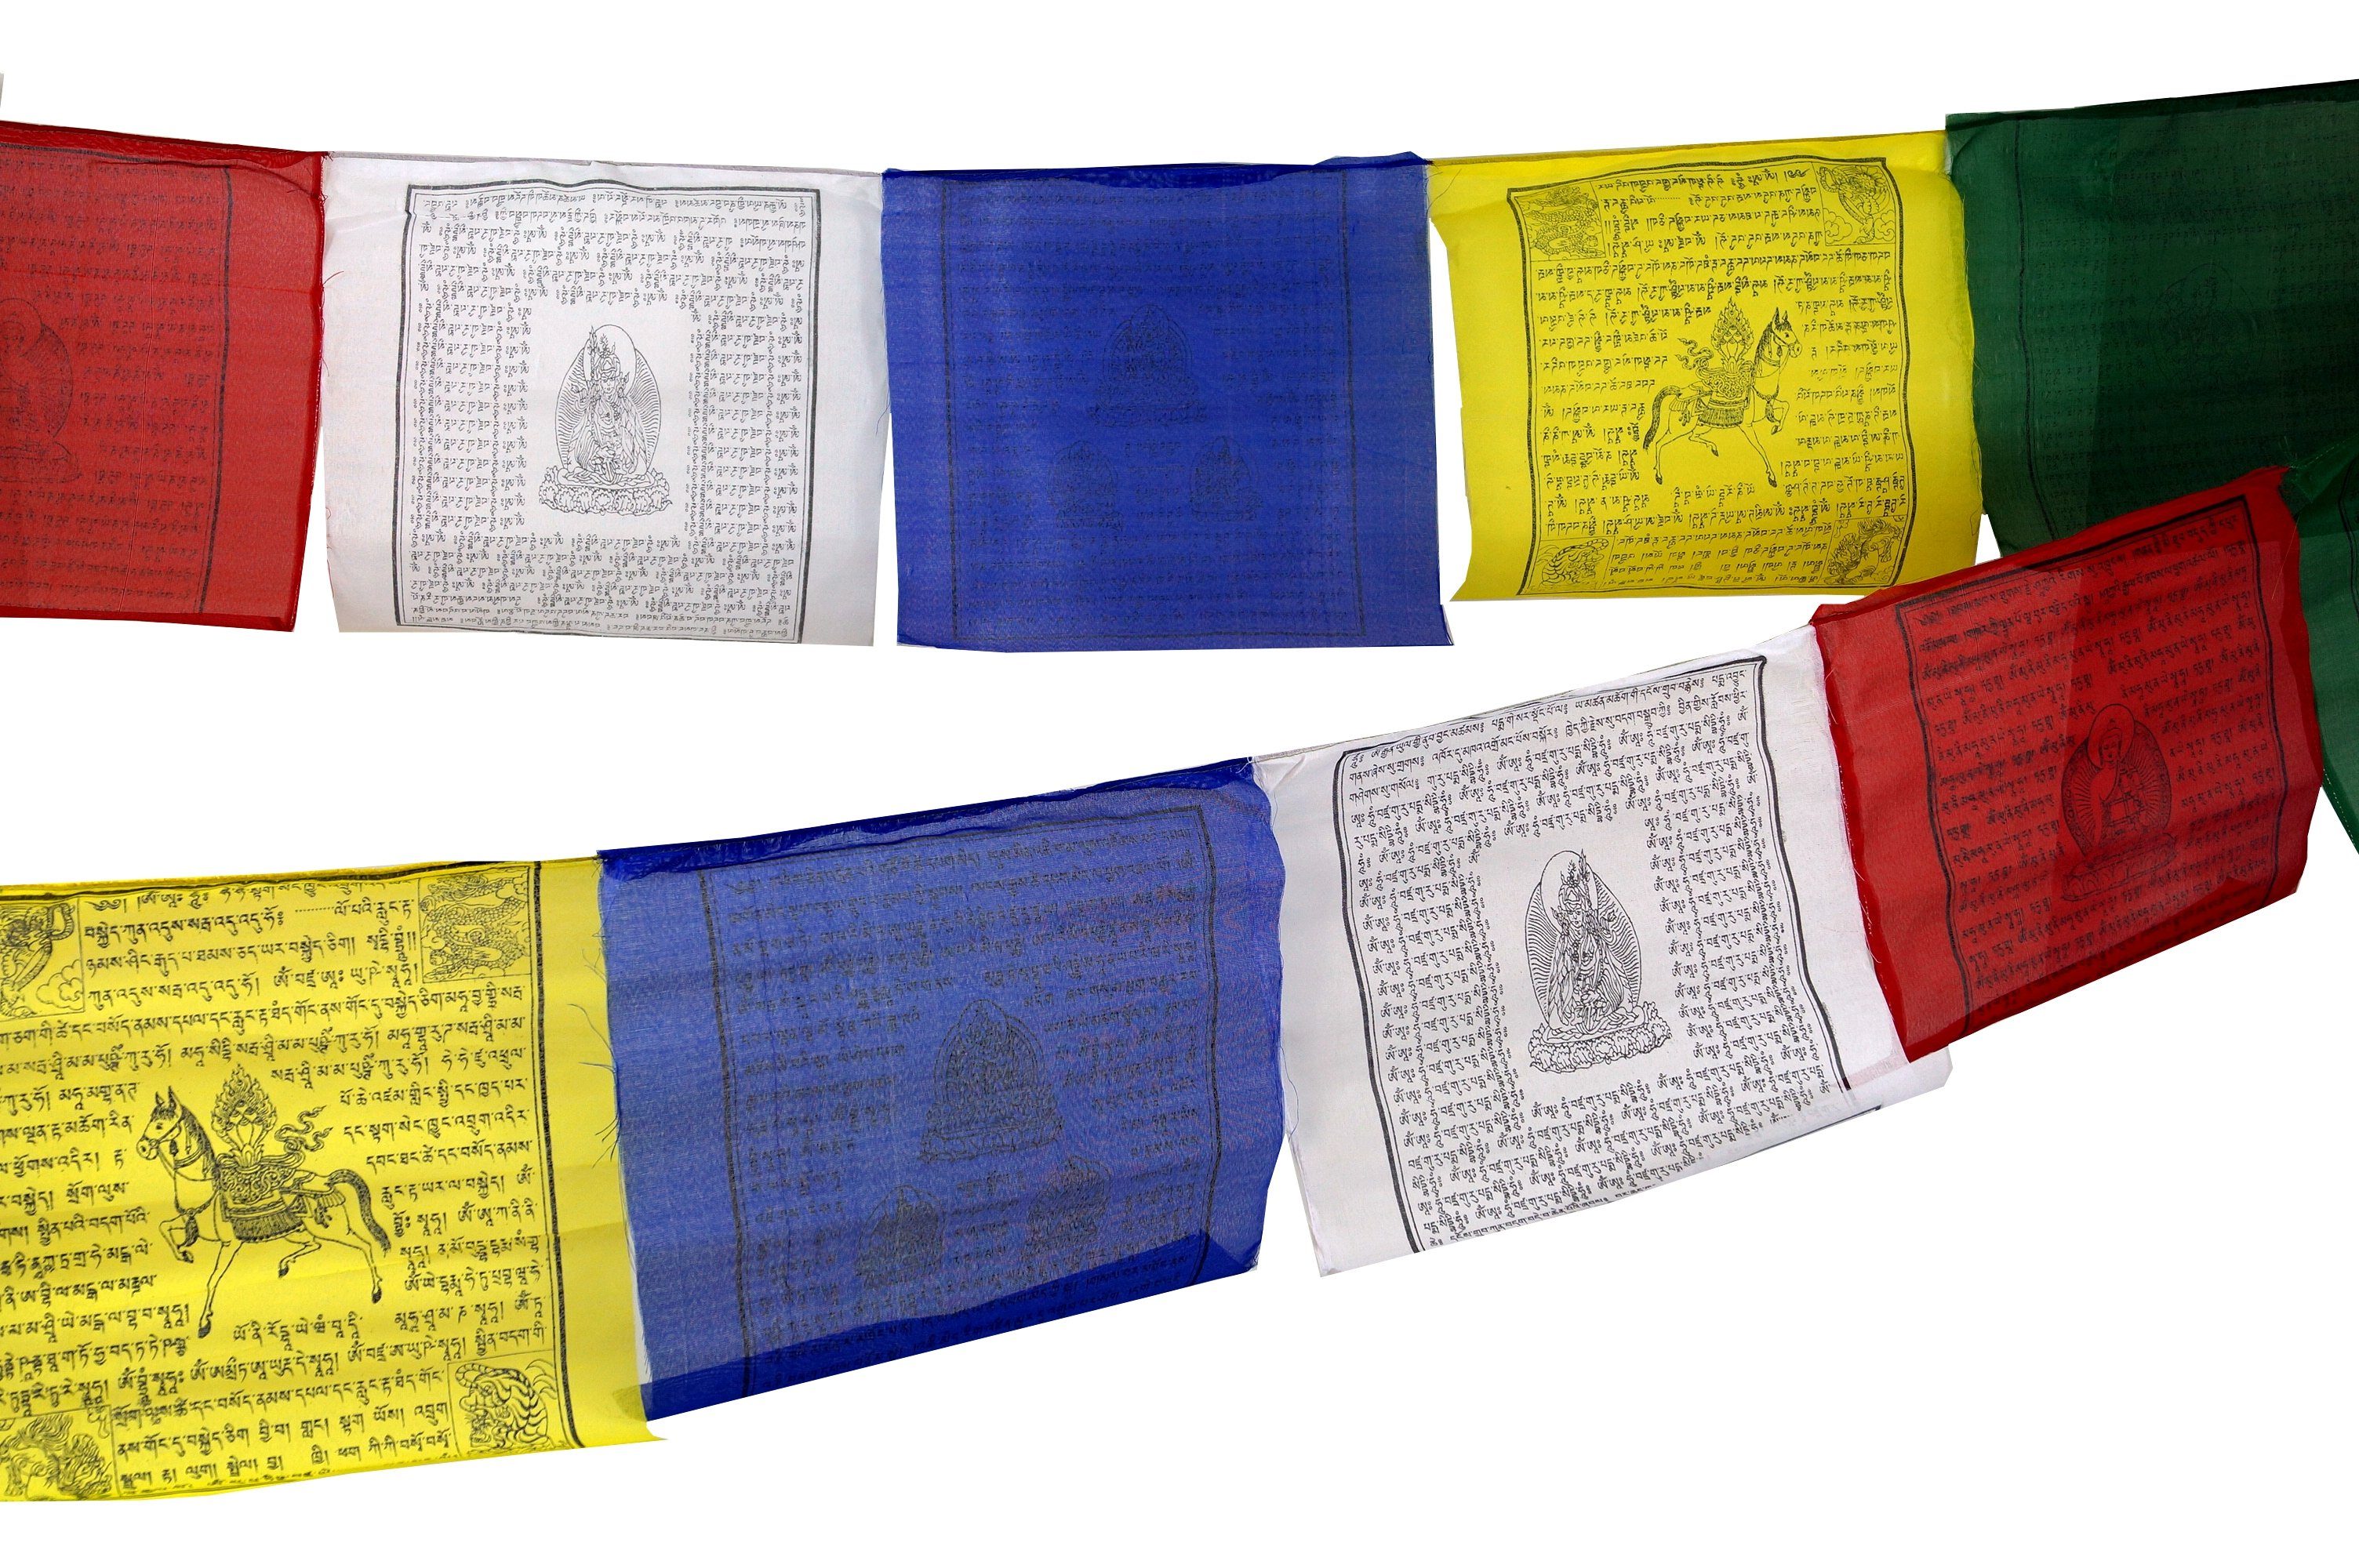 Guru-Shop Wimpelkette Gebetsfahnen m Stück lang (Tibet) 13*10 5 cm) 3,40 Sparpack.. (wimpel